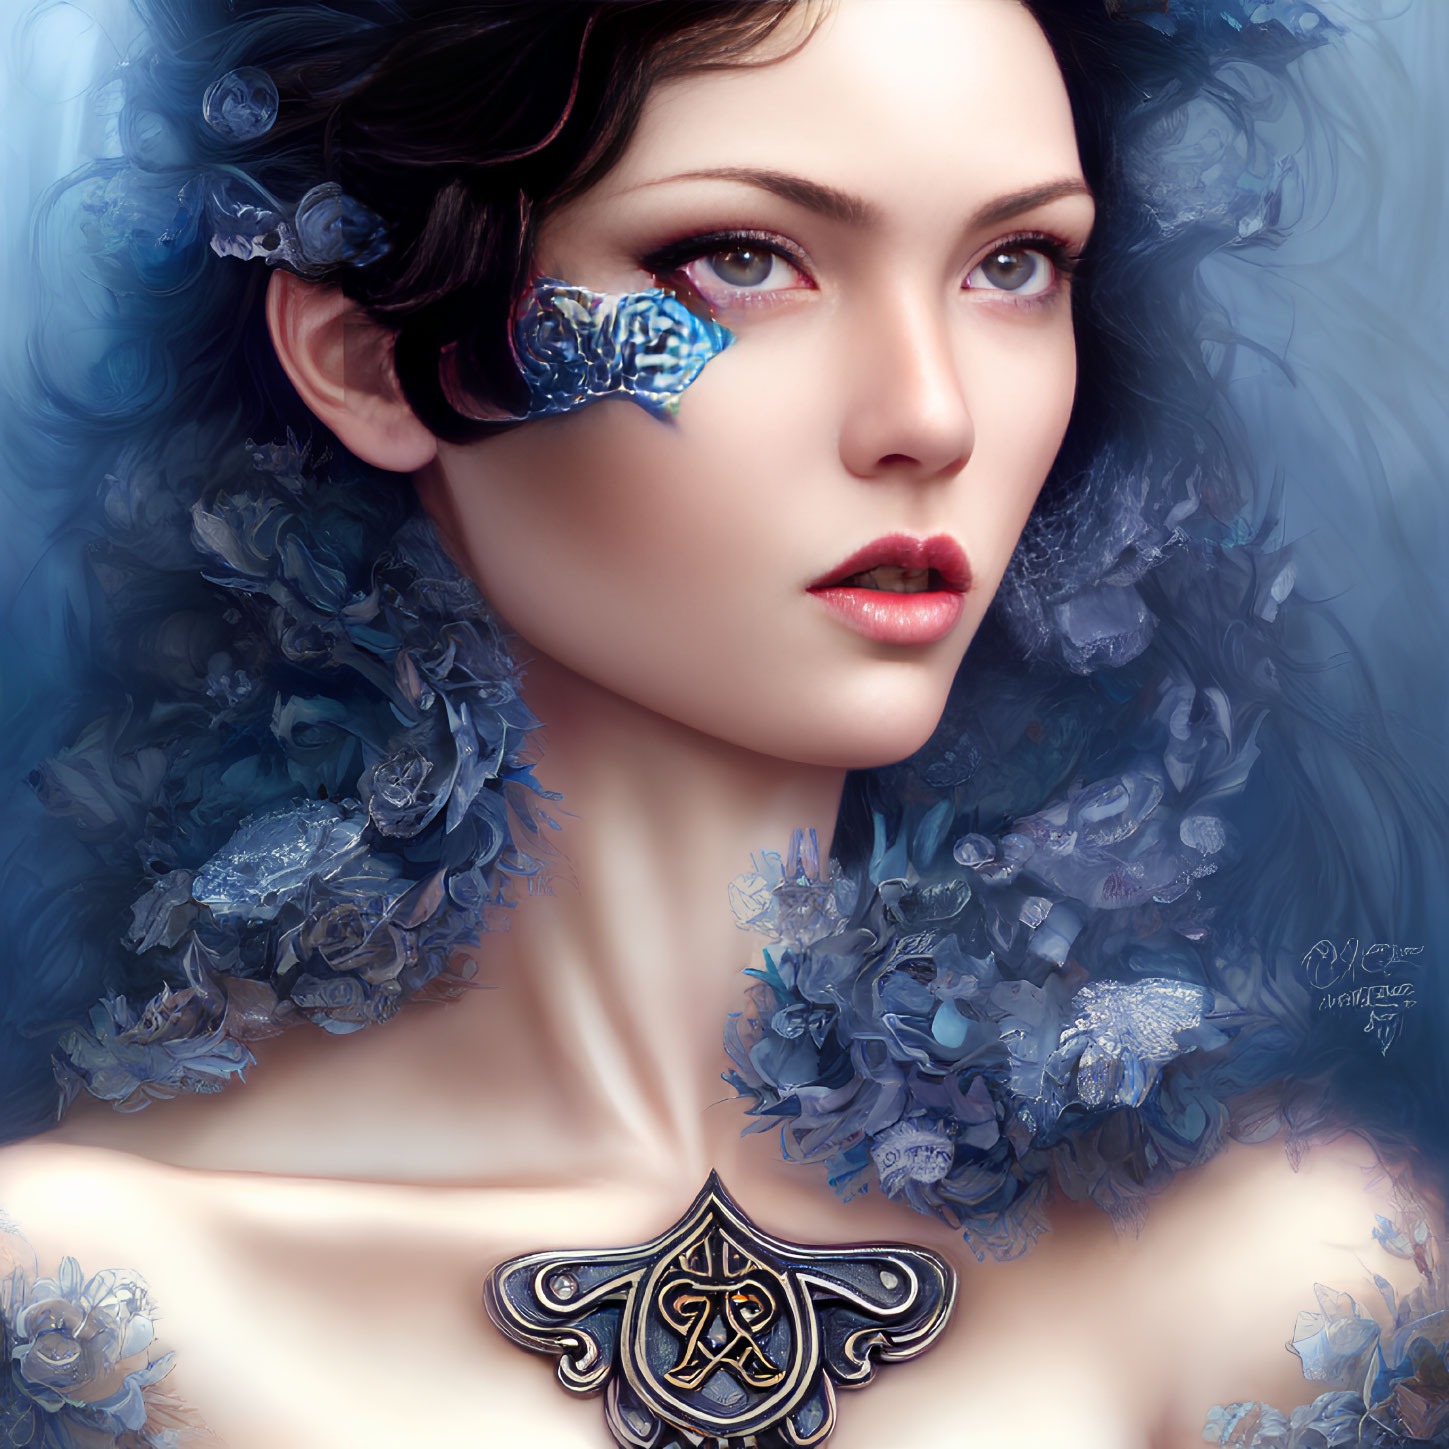 Digital portrait of woman with pale skin, dark hair, blue flowers, crystal eye, ornate pendant